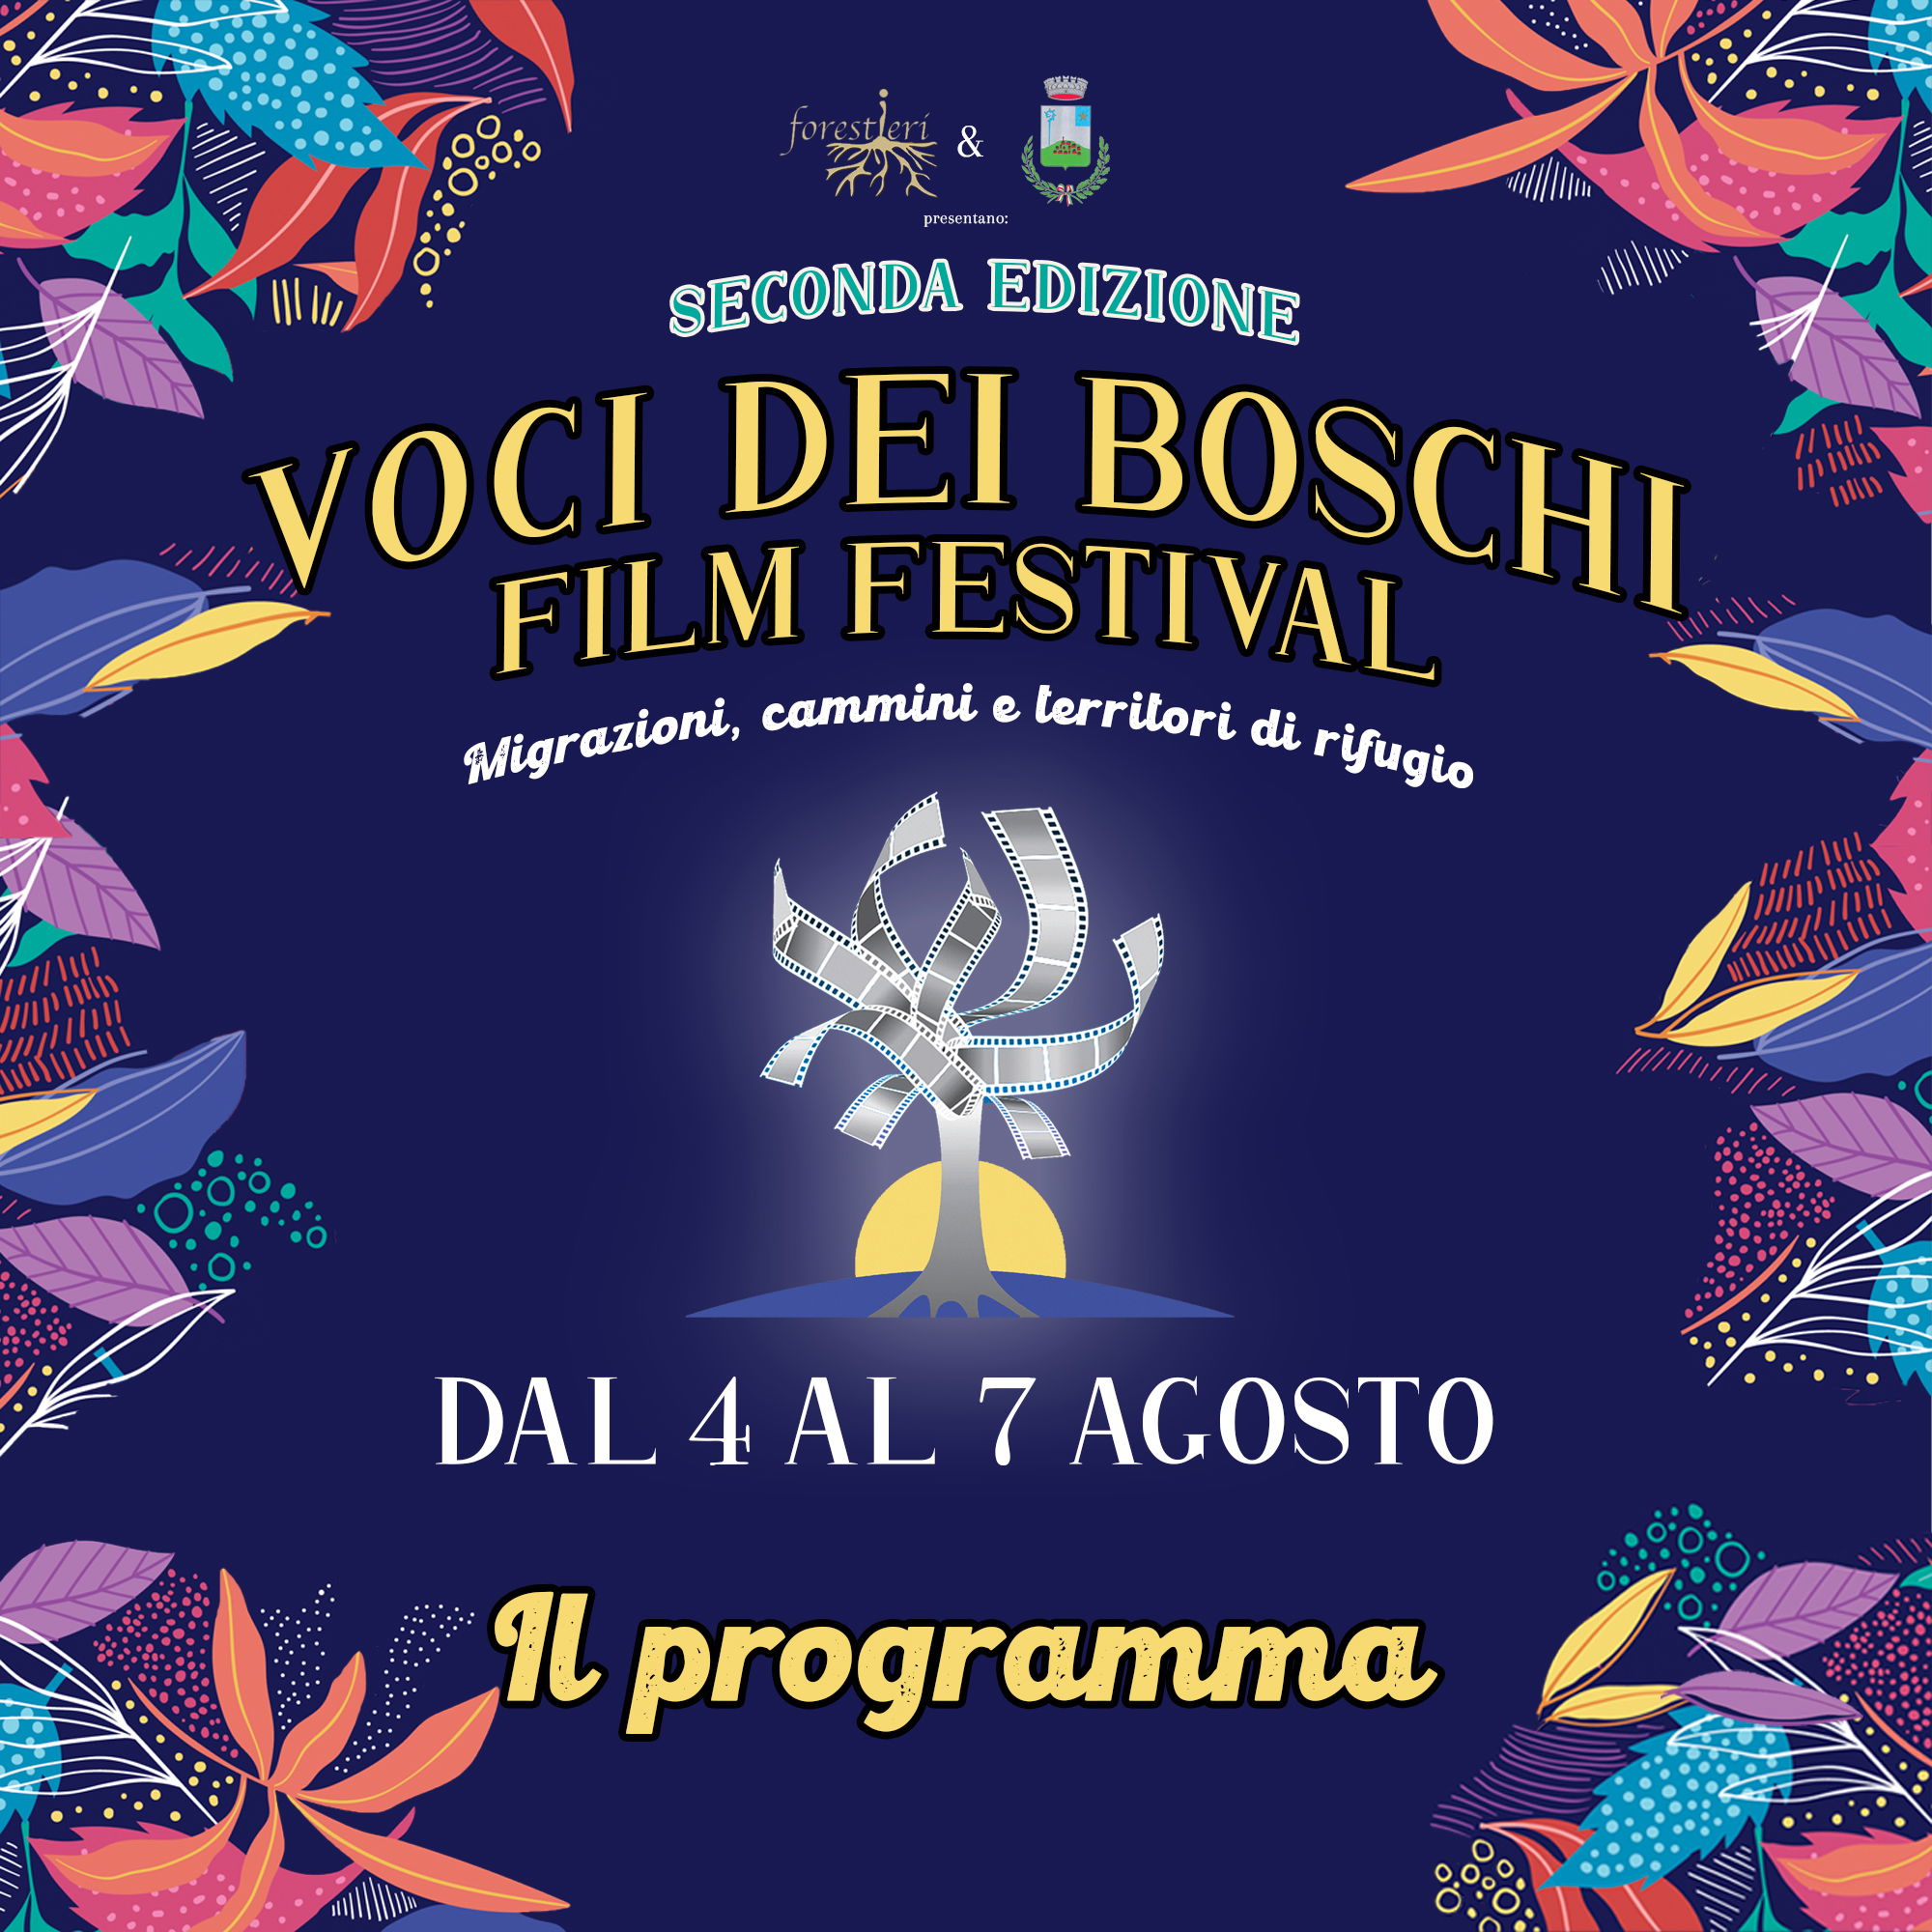 Dal 4 al 7 agosto a Costa Vescovato la seconda edizione di “Voci dai Boschi Film Festival”